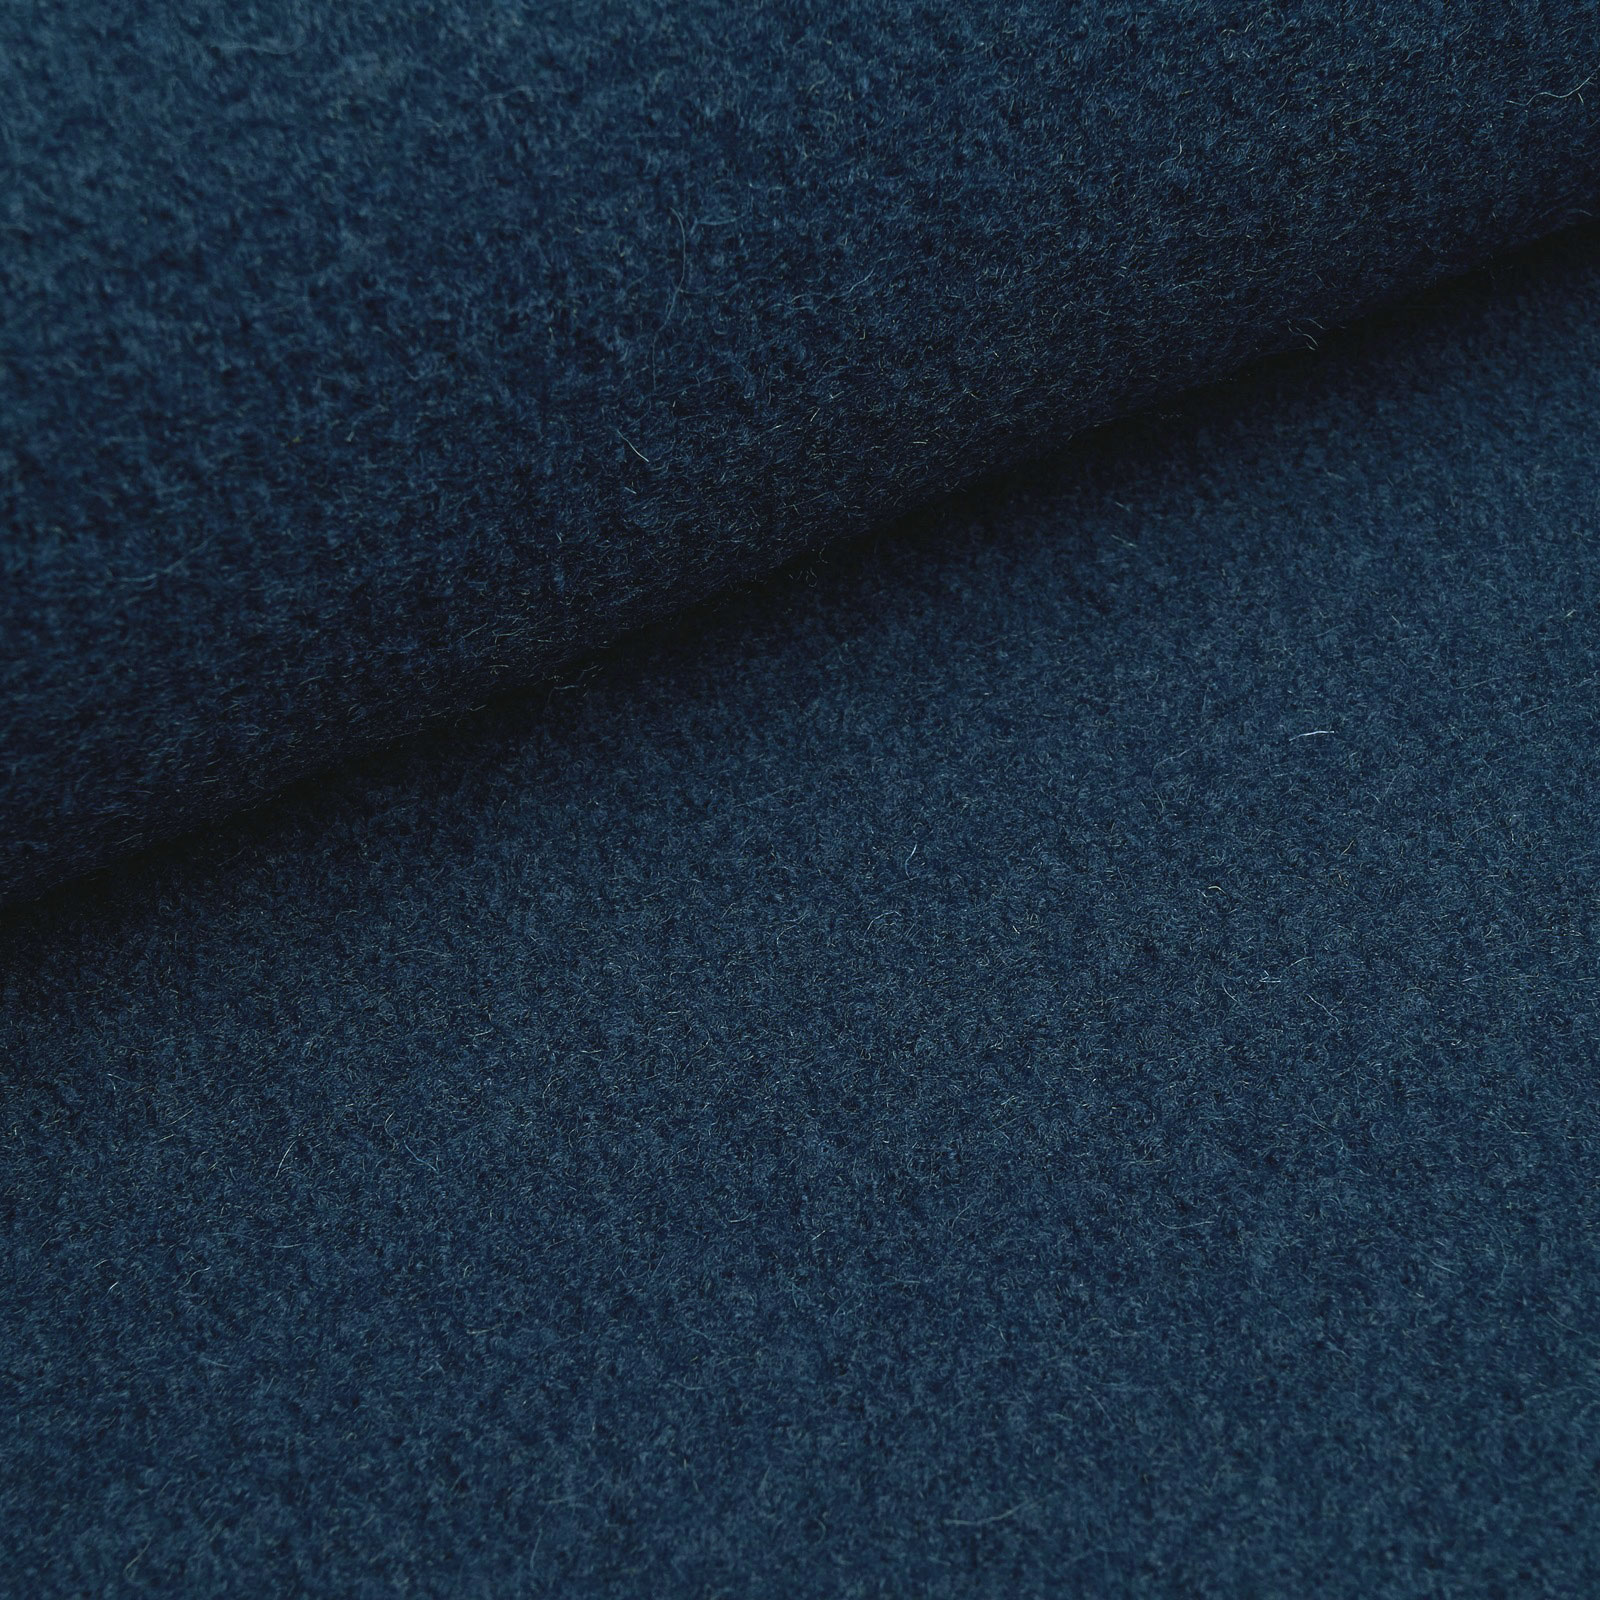 Fabian - Lana da cucina / Loden lavorato a maglia in 100% pura lana vergine - Blu indigo